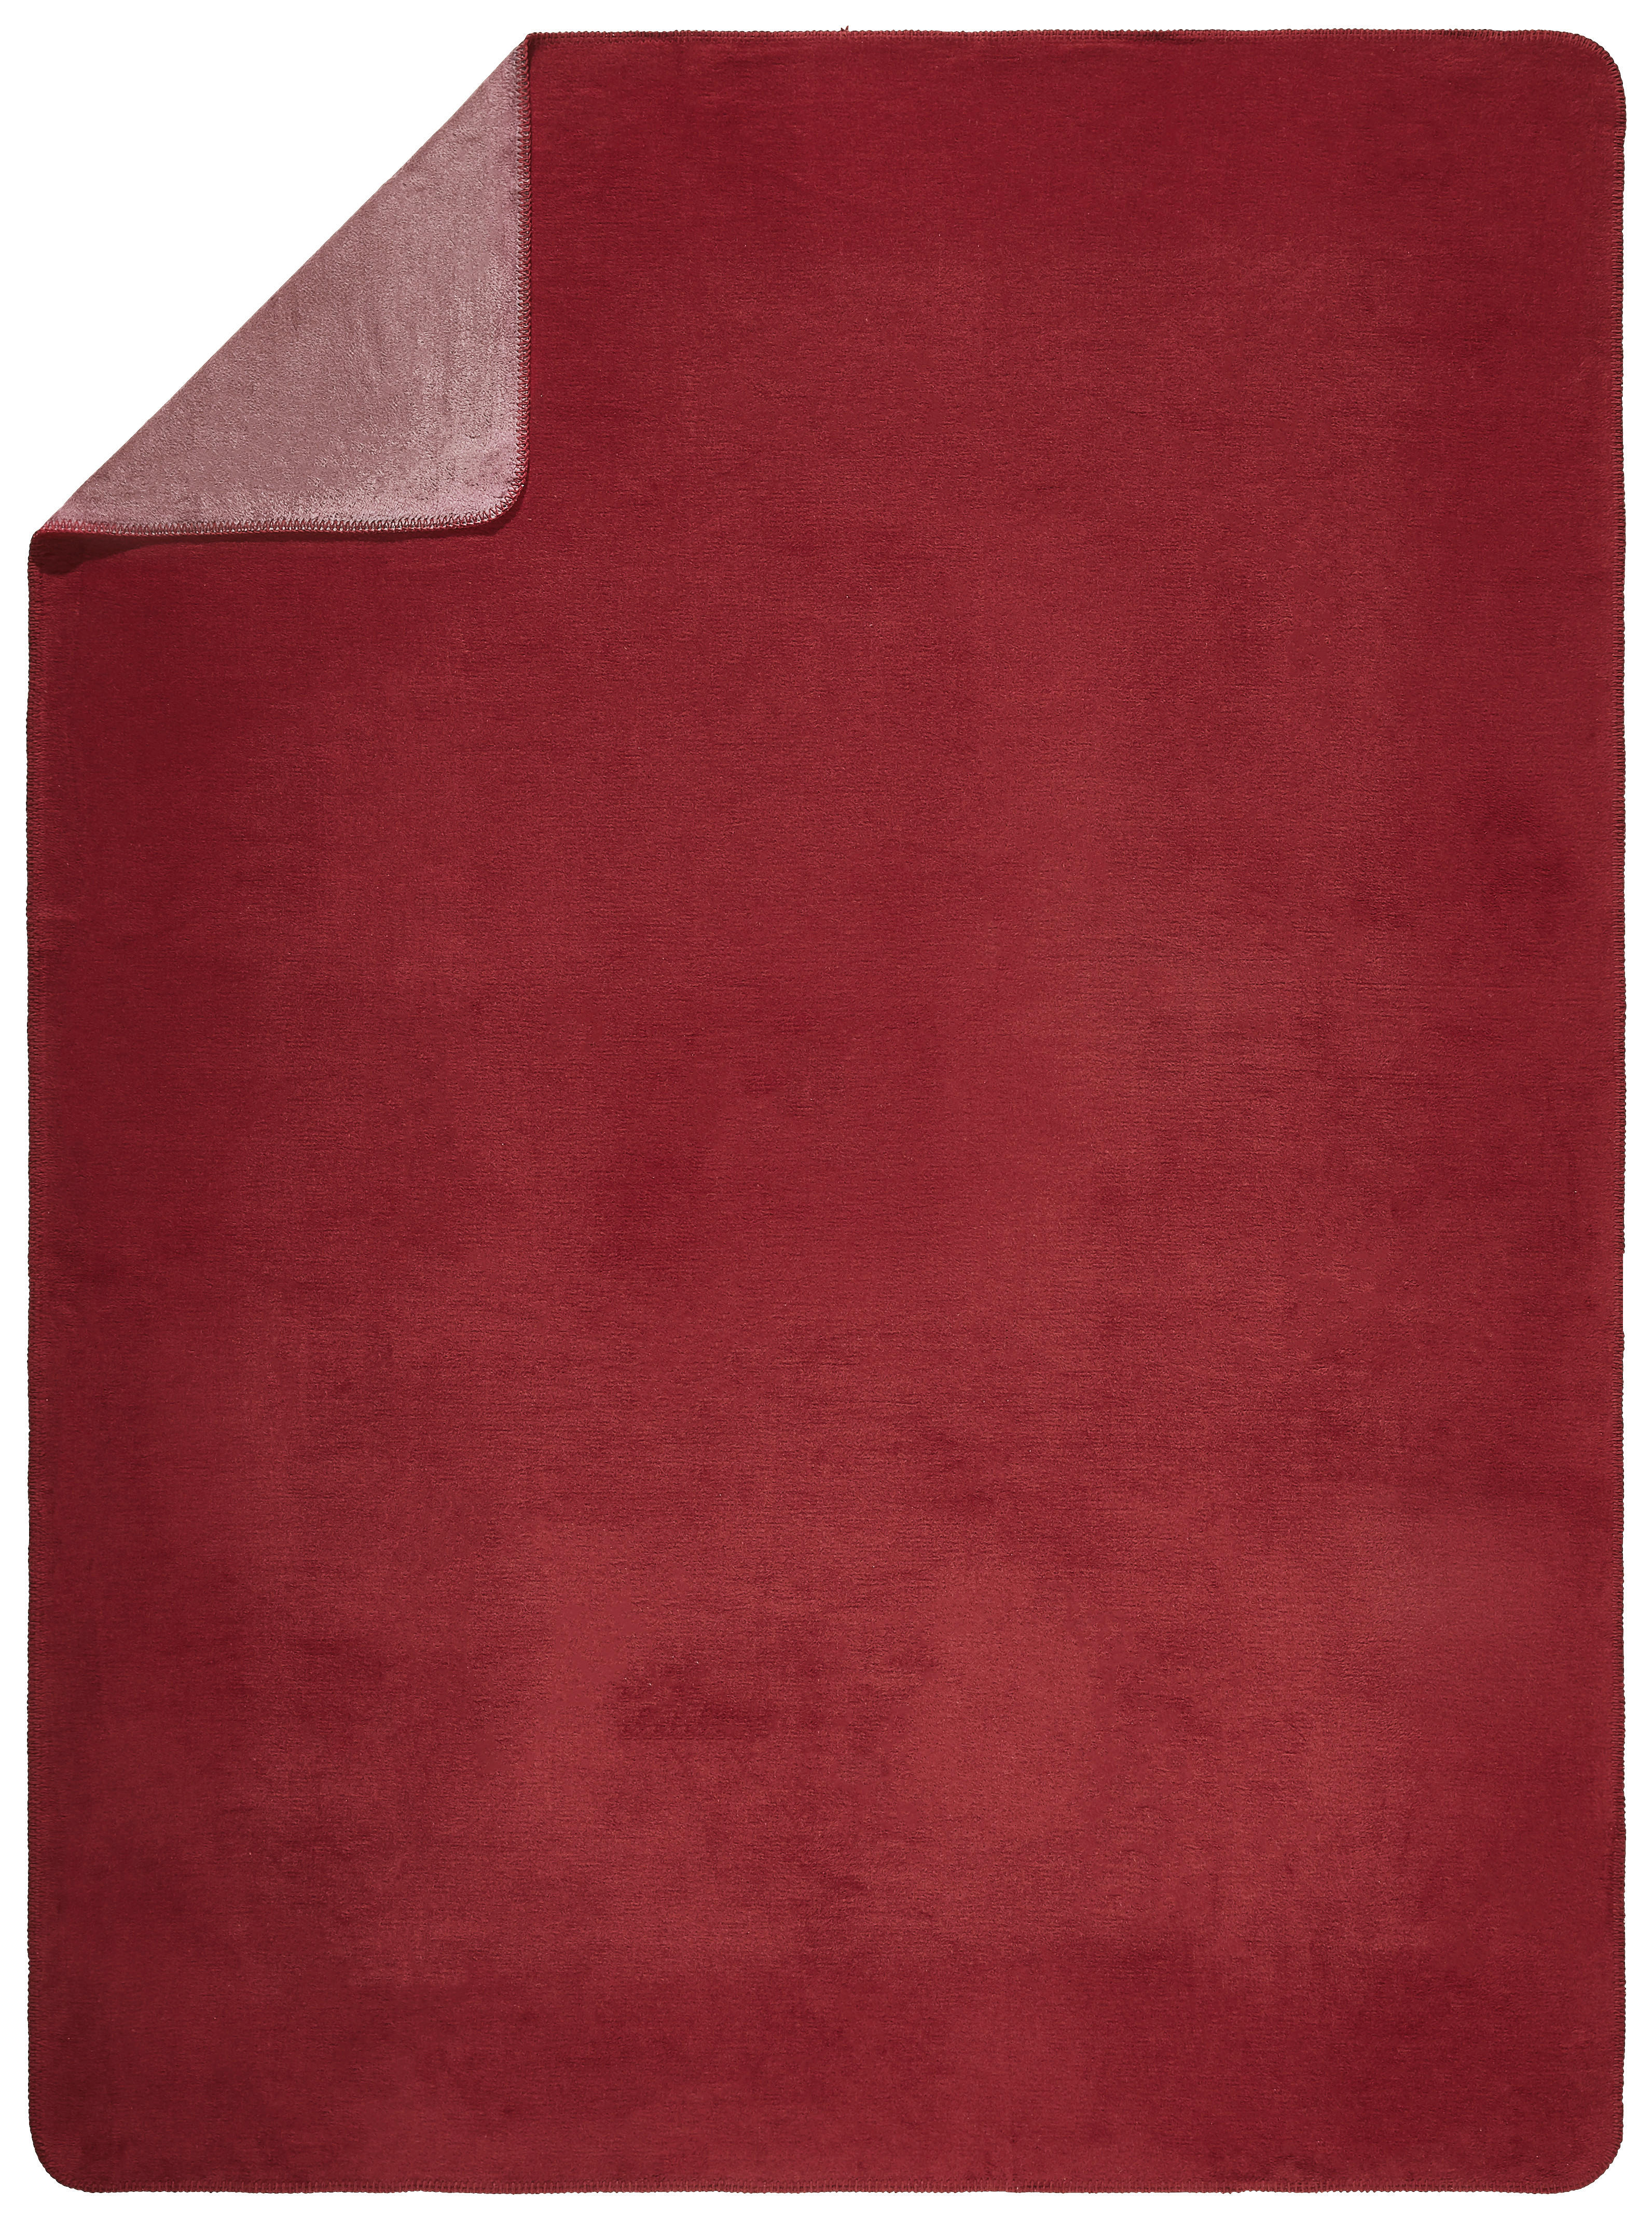 WOHNDECKE DE VELA NOVEL 150/200 cm  - Rot, Basics, Textil (150/200cm) - Novel